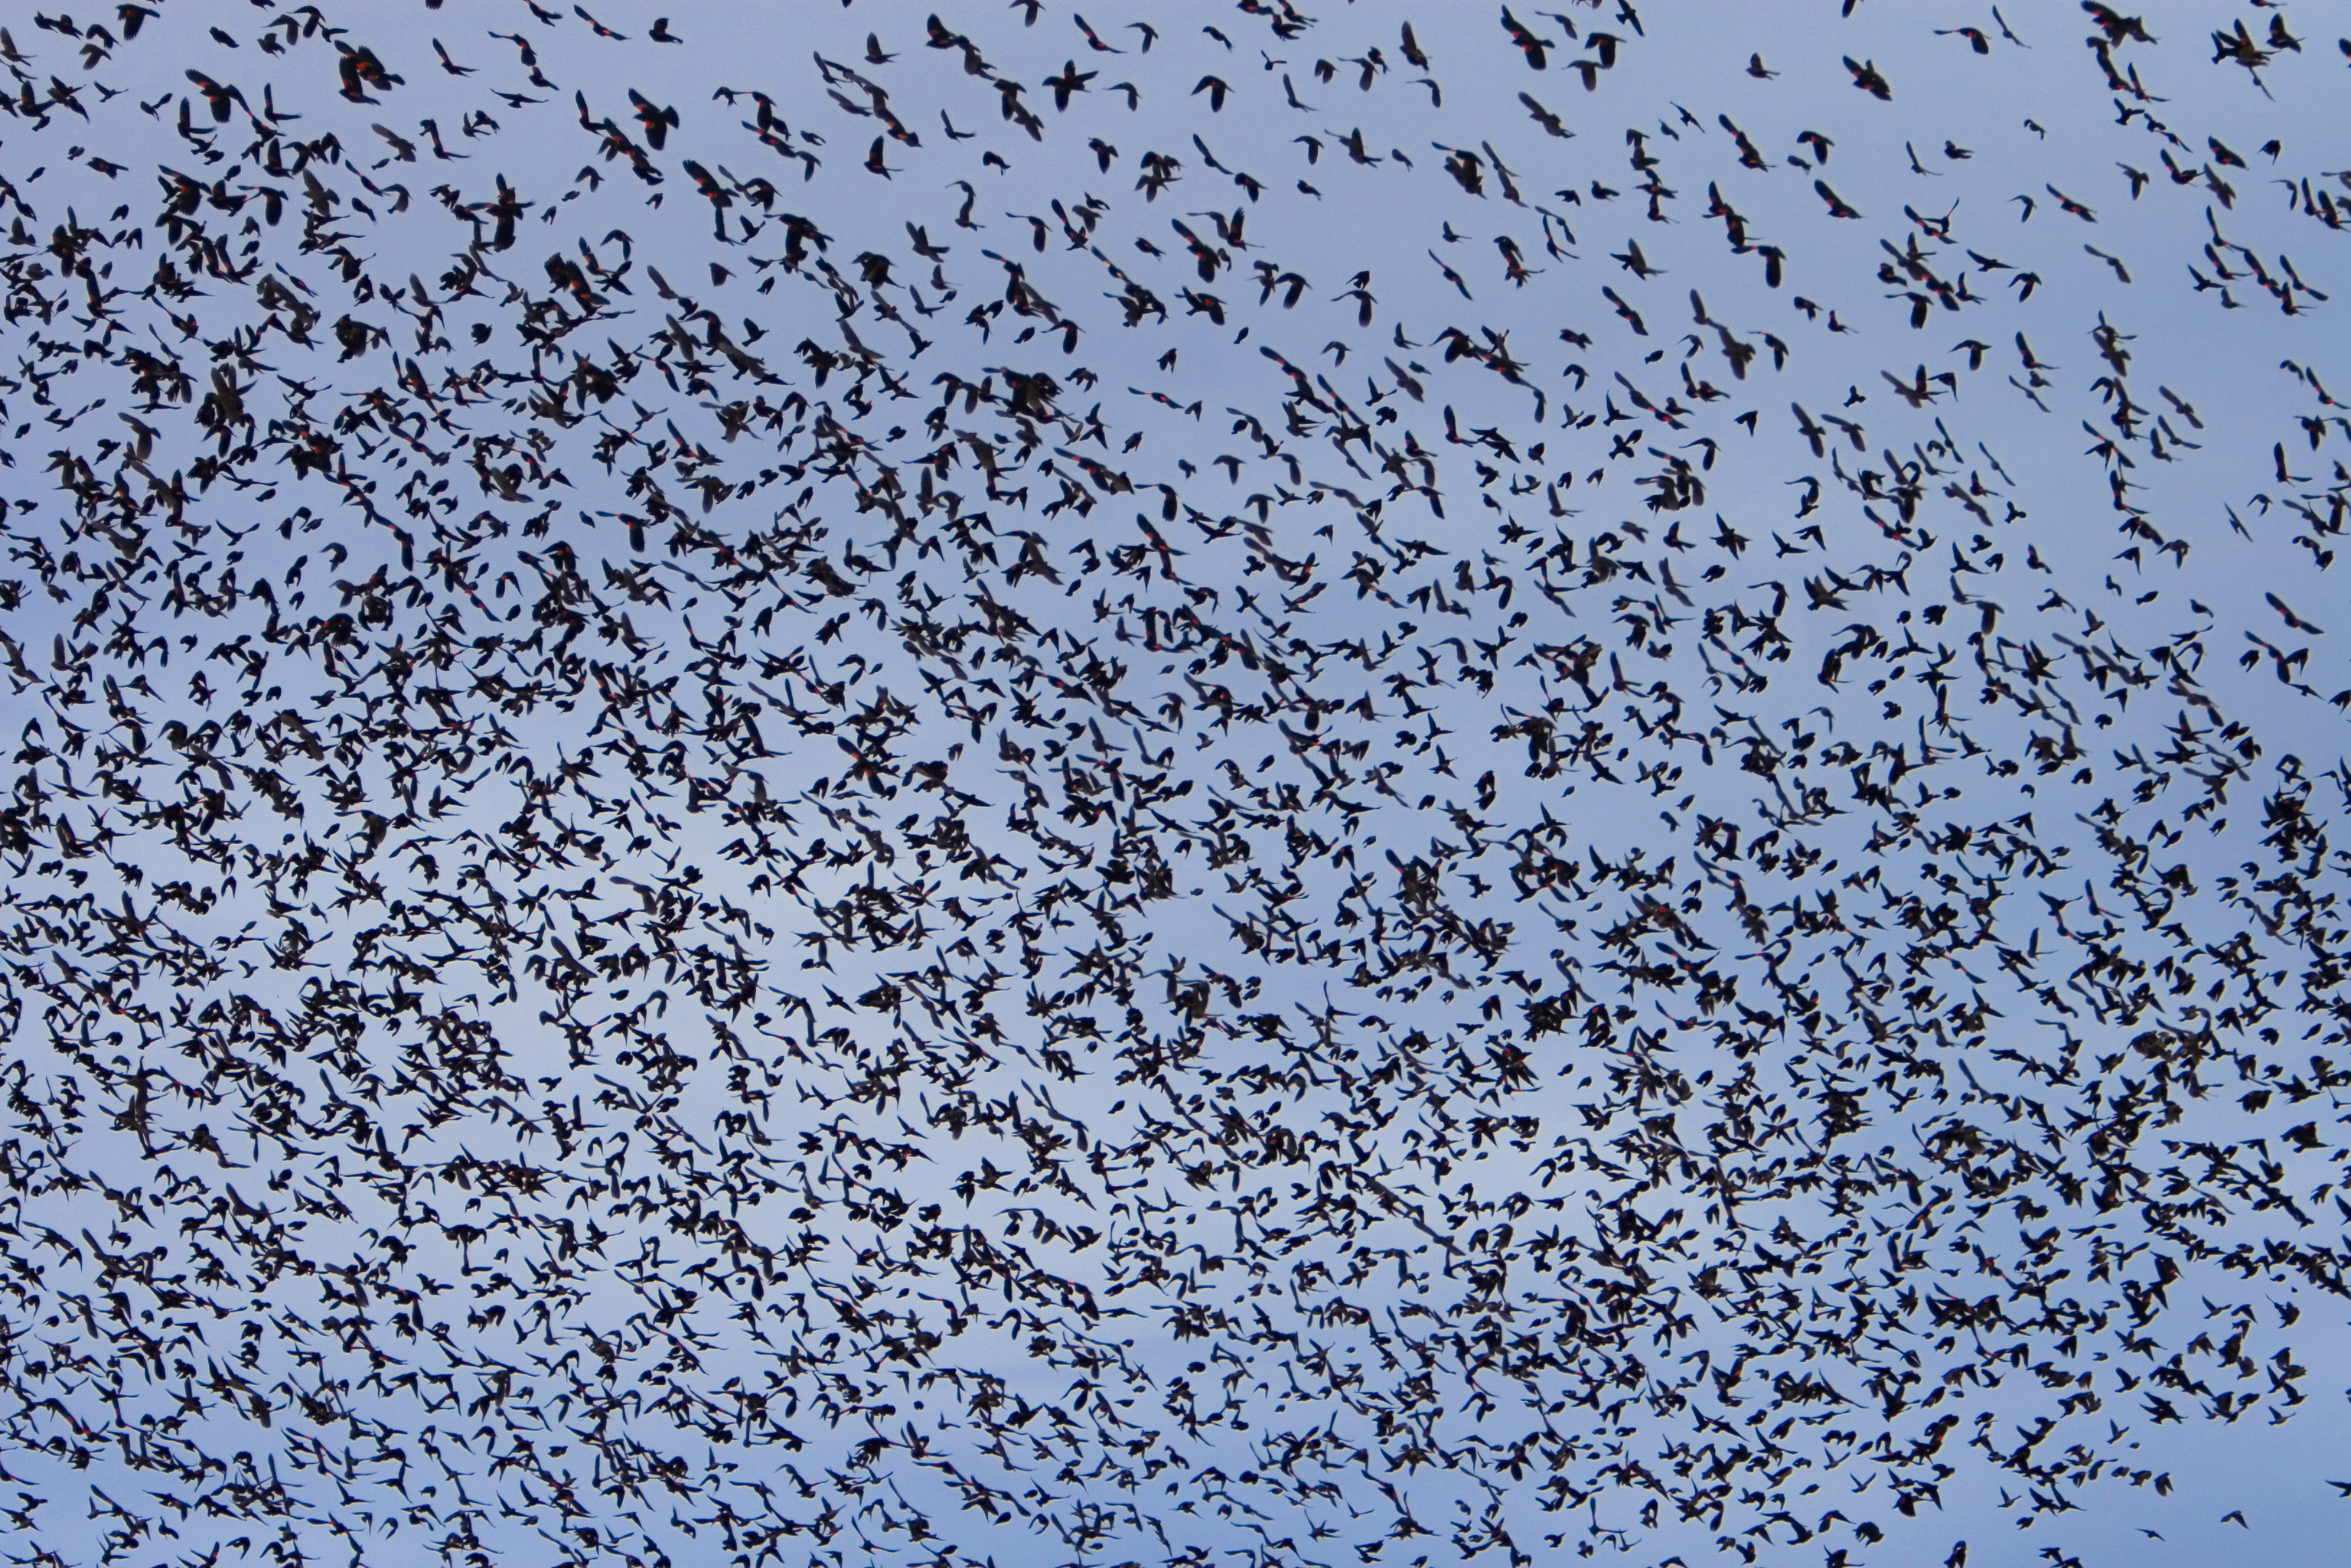 A flock of birds fills the sky in Southeast Colorado | Colorado.com